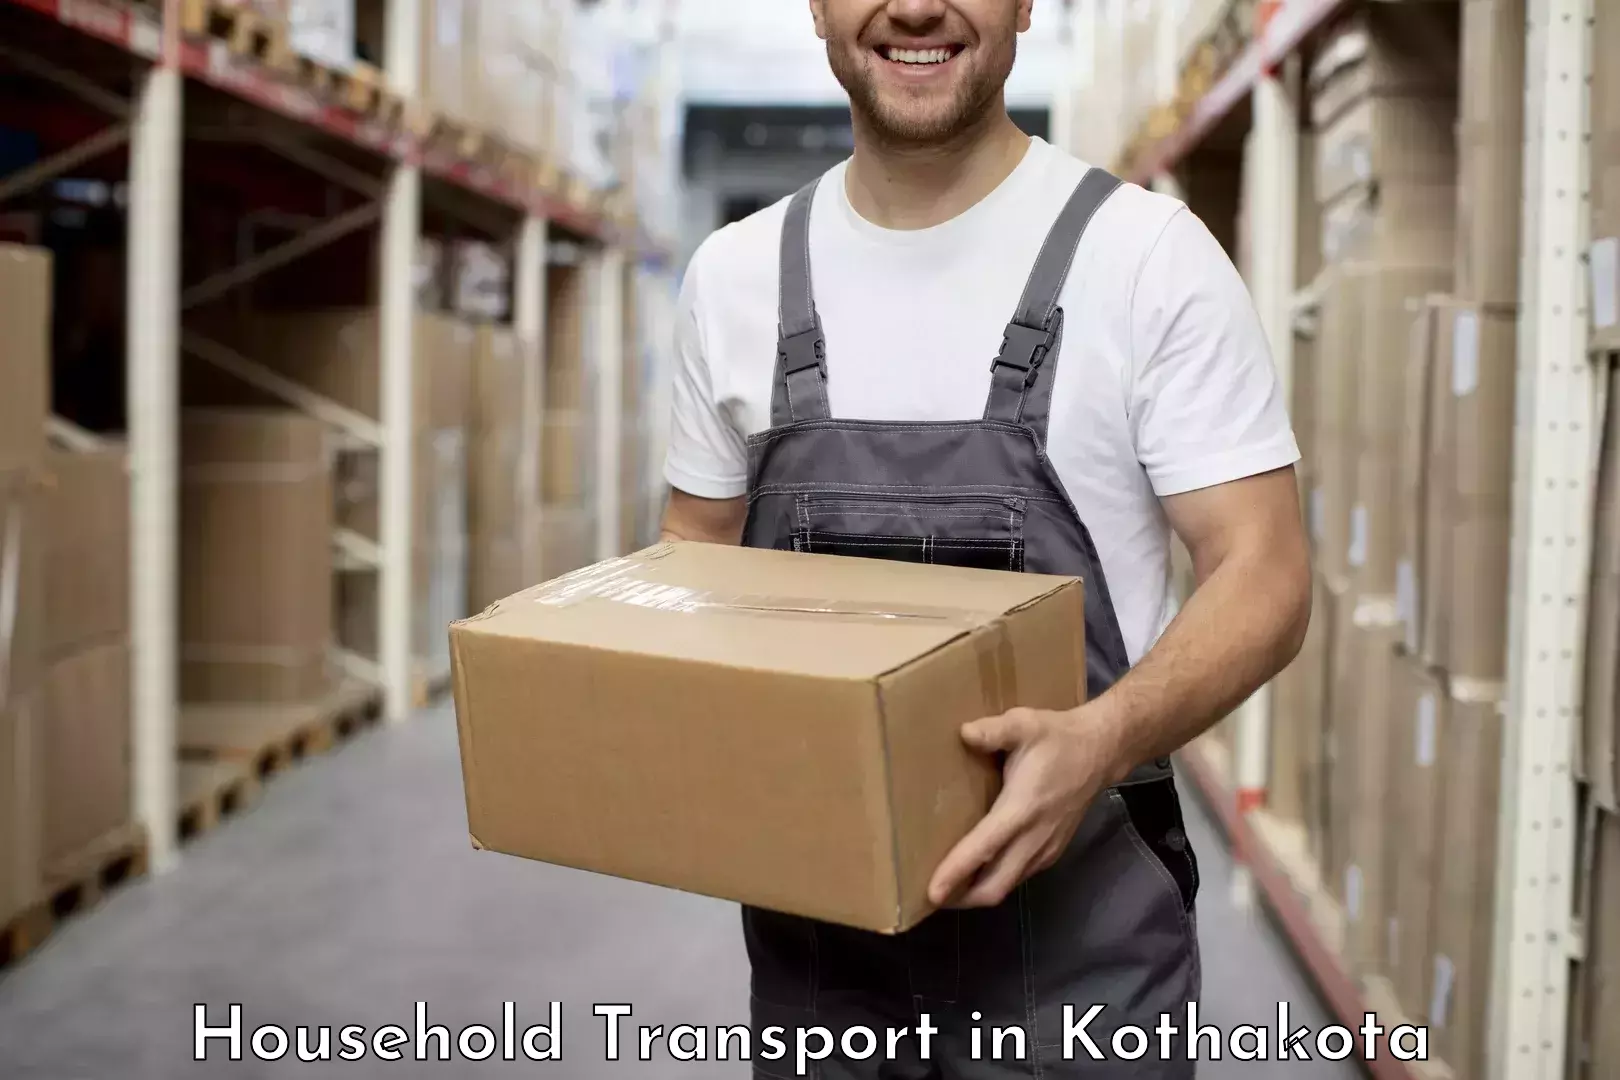 Reliable goods transport in Kothakota